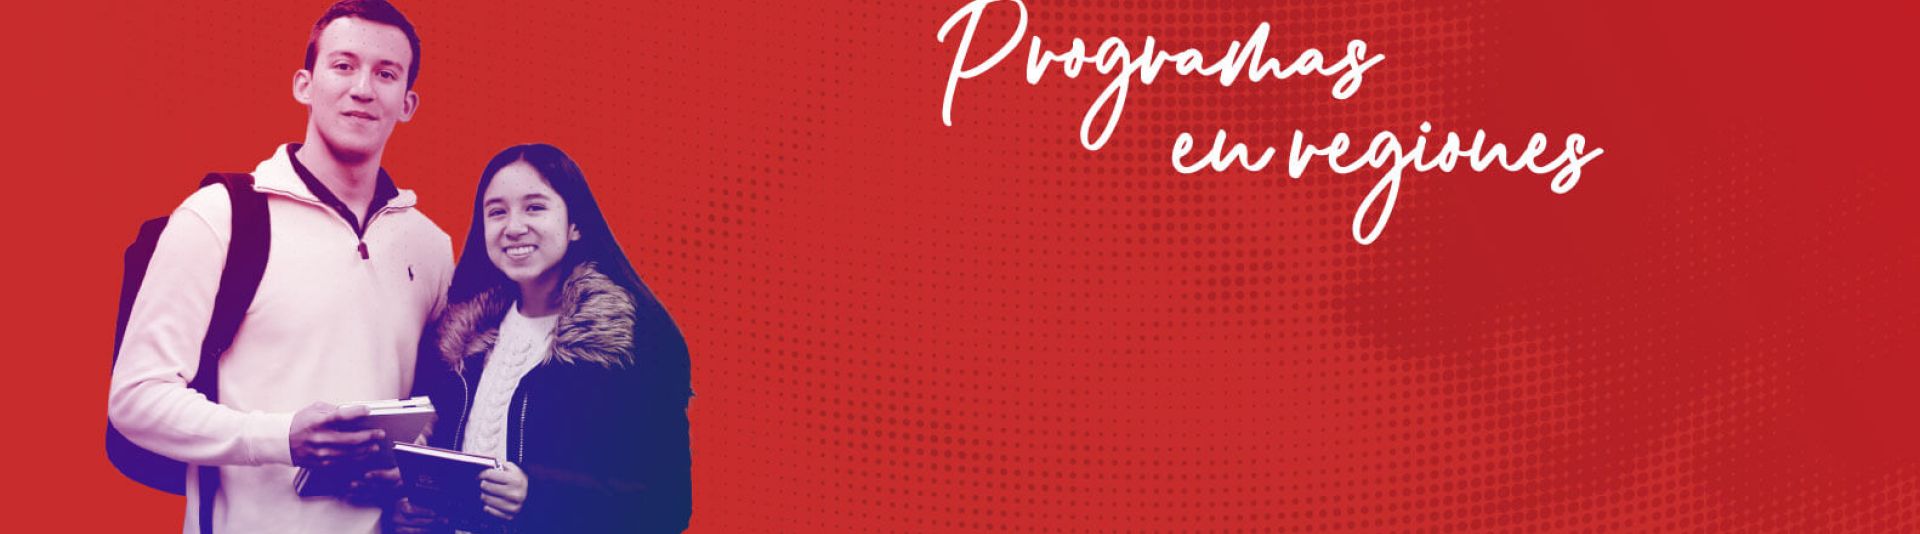 Programas Regionales Universidad del Rosario